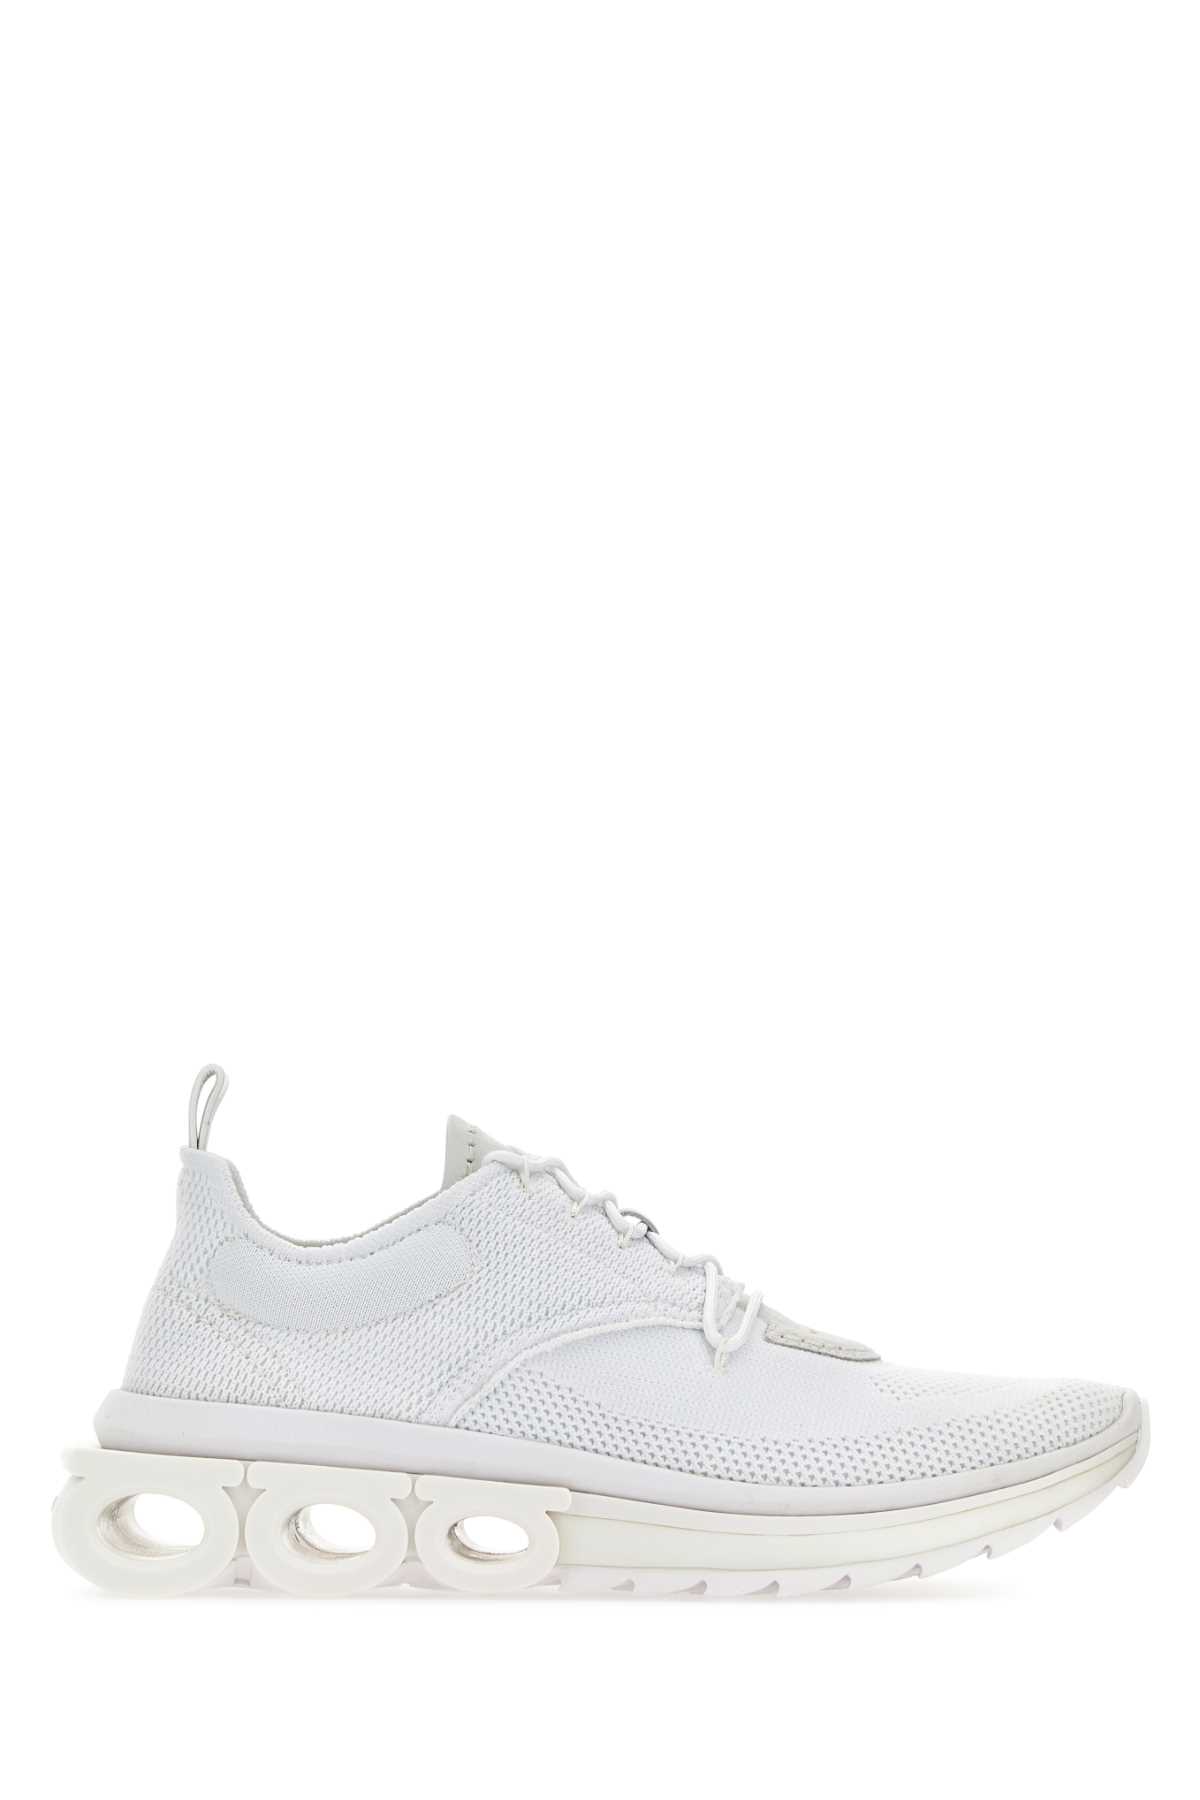 White Tech Knit Nima Sneakers